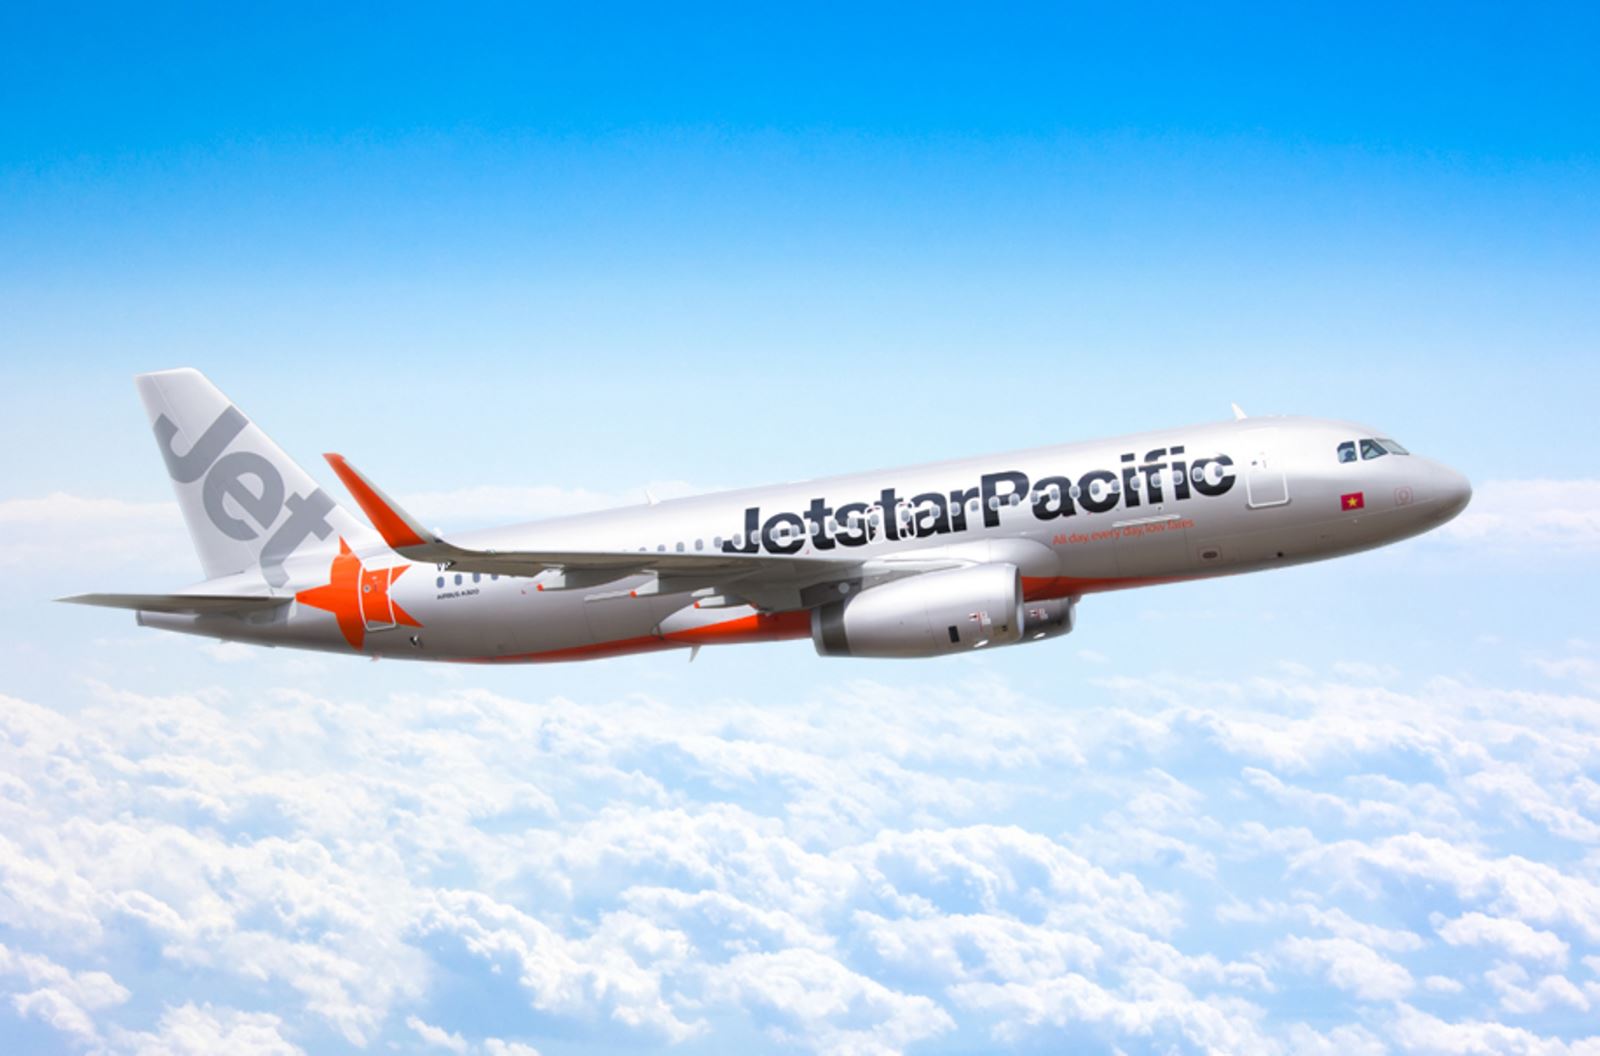  Hãng máy bay Jetstar Pacific